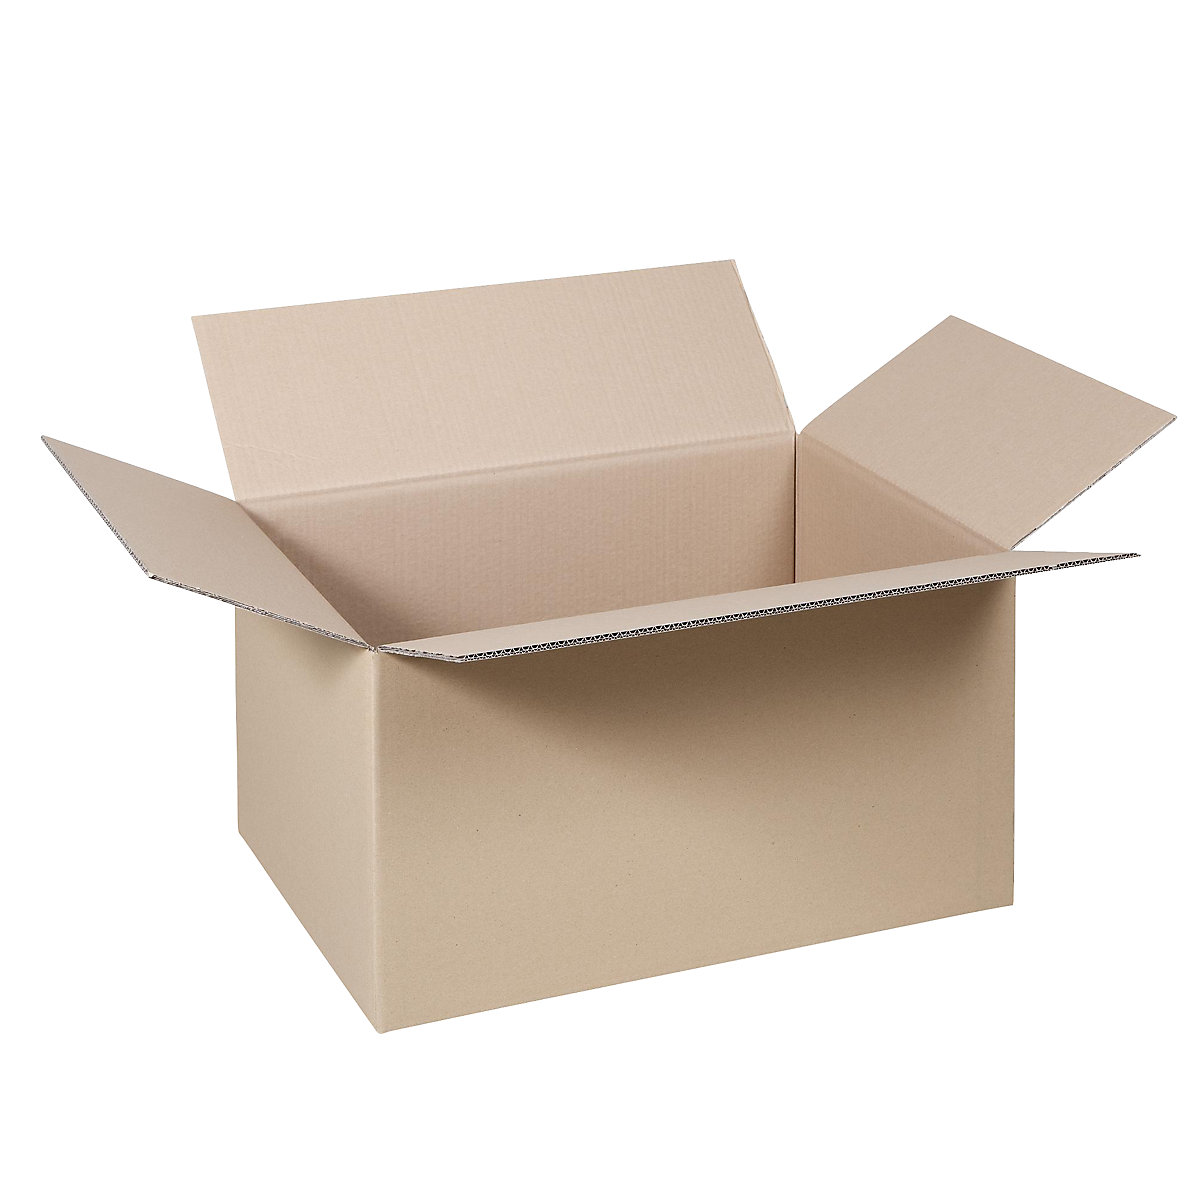 Cutie de carton pliantă, FEFCO 0201, cu 2 straturi de carton ondulat, dimensiuni interioare 500 x 400 x 400 mm, amb. 50 buc.-25